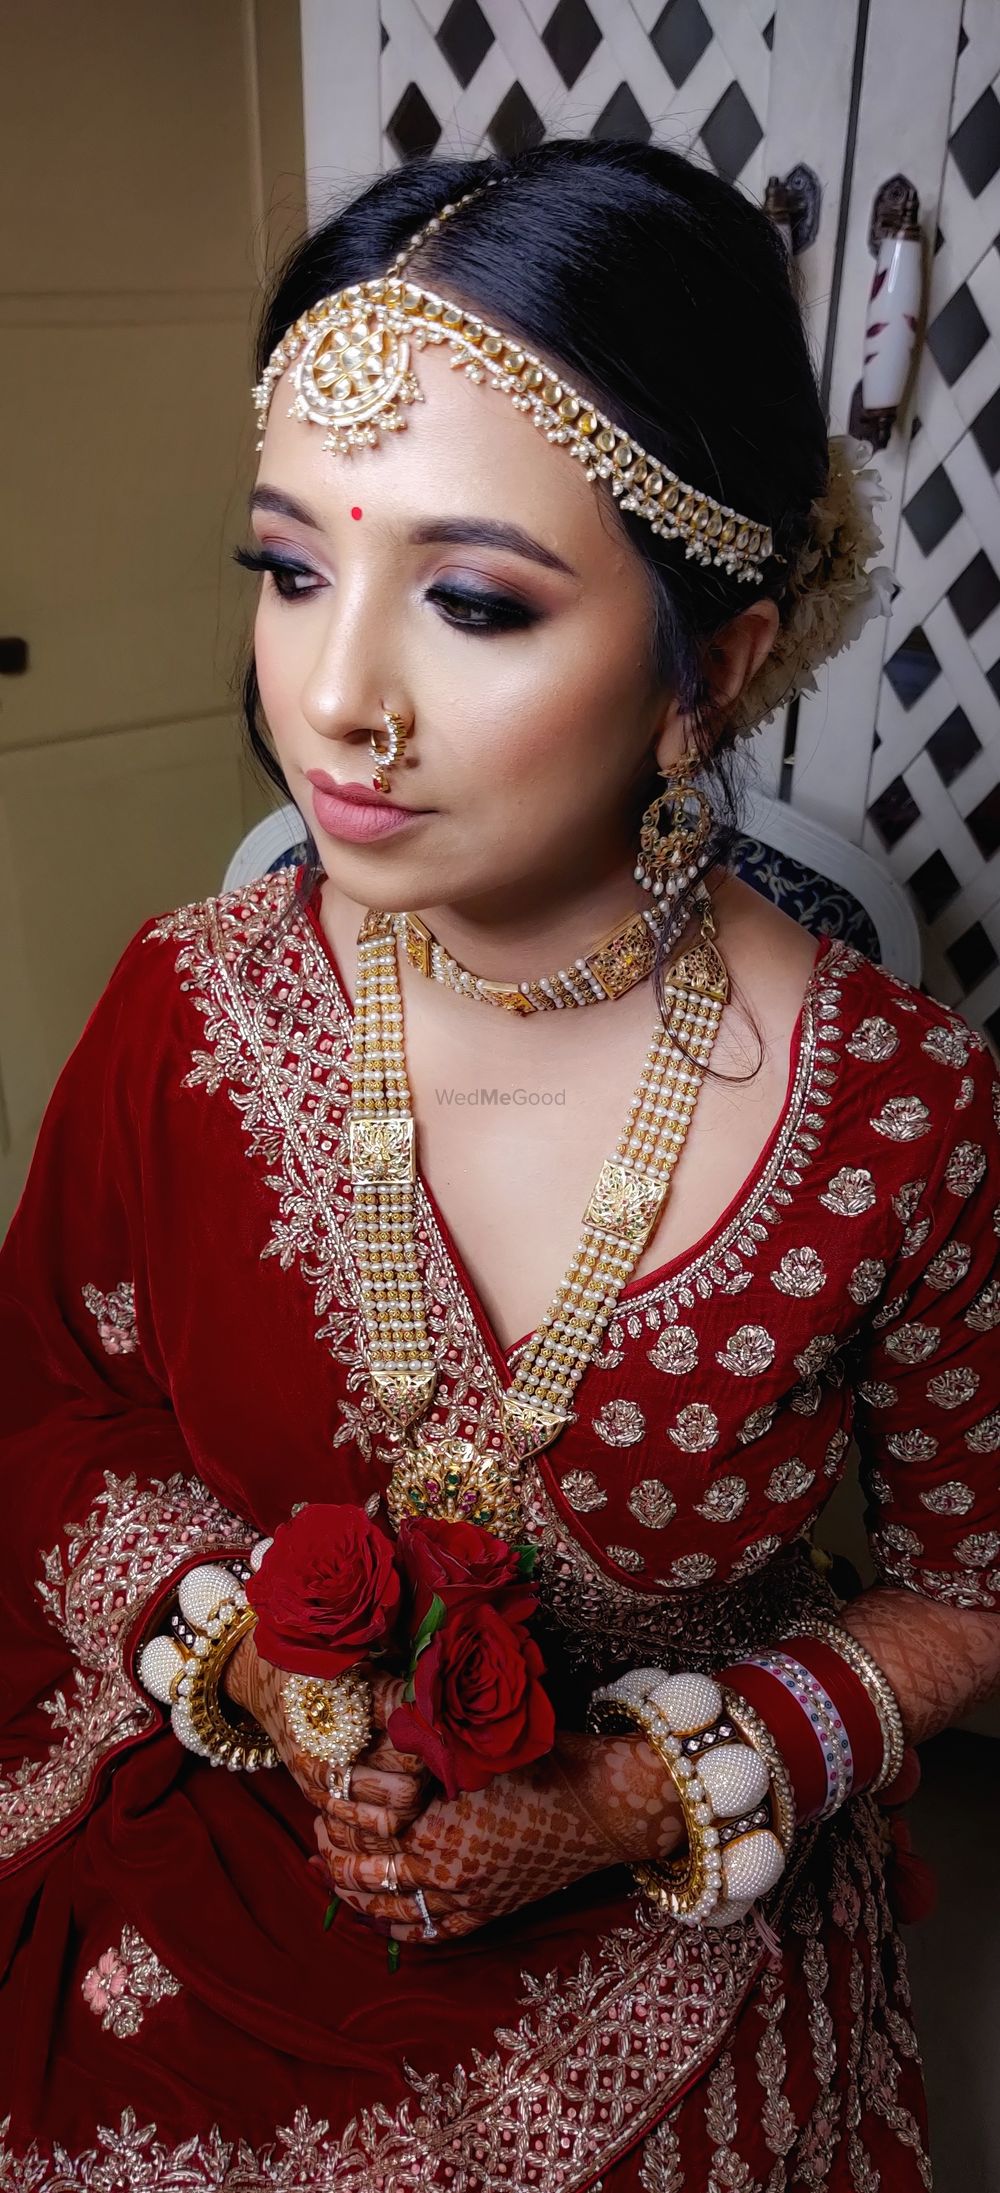 Photo From Niharika Bridal - By Aastha Sidana Makeup